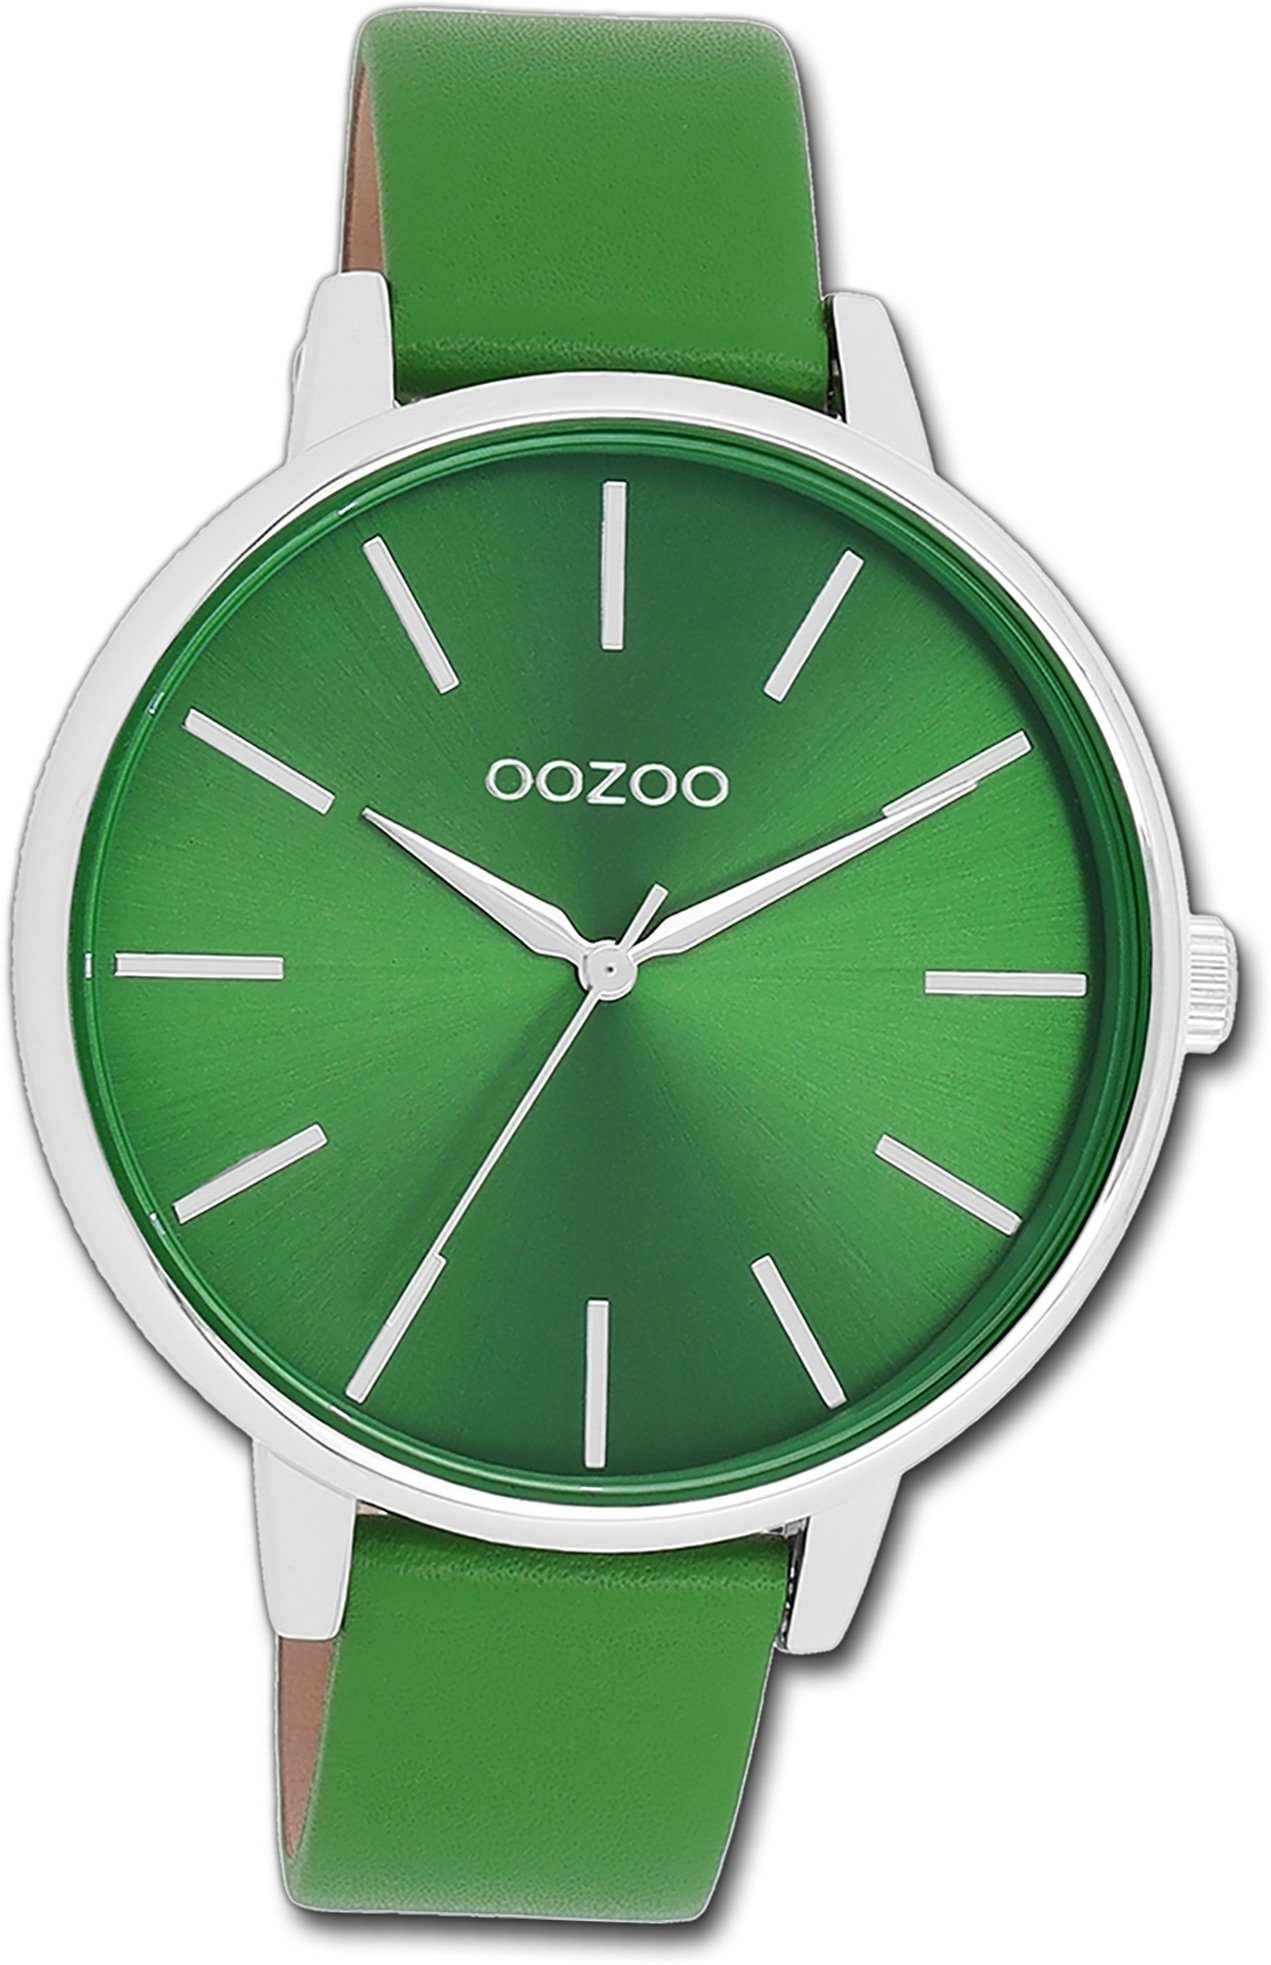 OOZOO Quarzuhr Oozoo Damen Armbanduhr Timepieces, (Analoguhr), Damenuhr Lederarmband grün, rundes Gehäuse, groß (ca. 42mm)